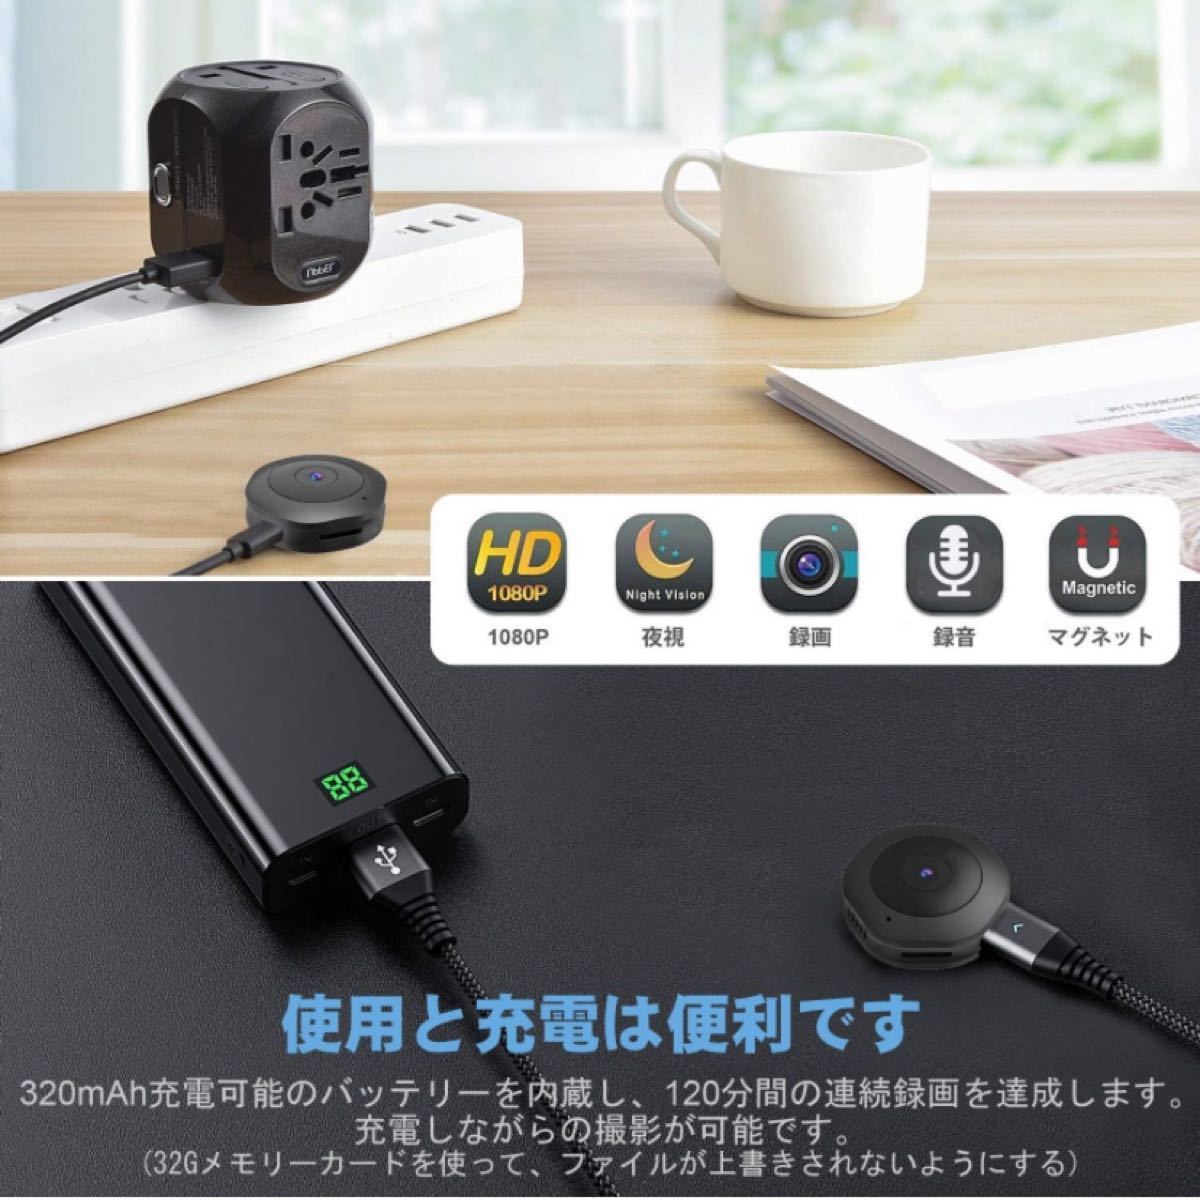 【新品】CHUHE 防犯カメラ 1080P 防犯監視カメラ 暗視機能 録画録音